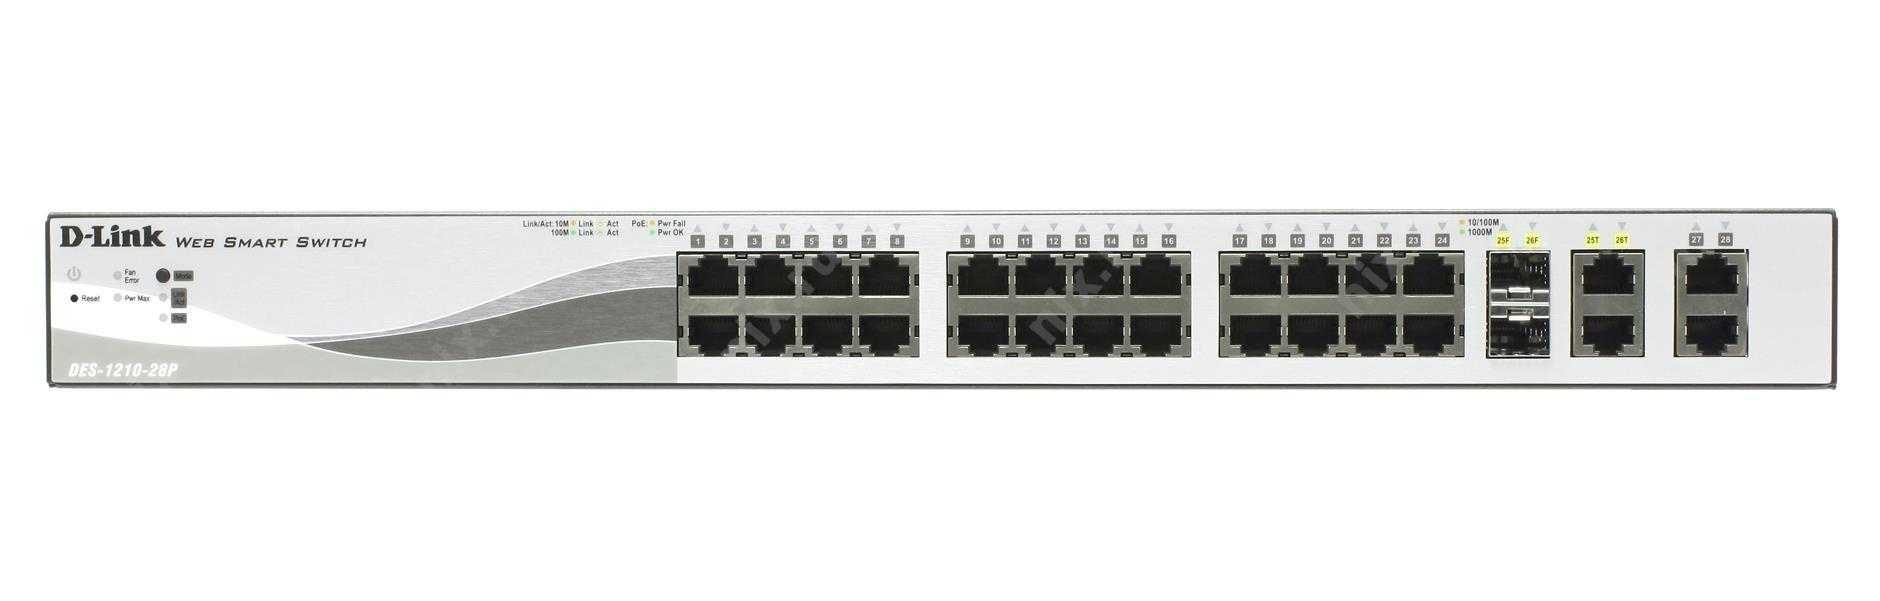 Коммутатор d-link web smart switch des-1210-28 / c1a 28 x rj45 — купить, цена и характеристики, отзывы